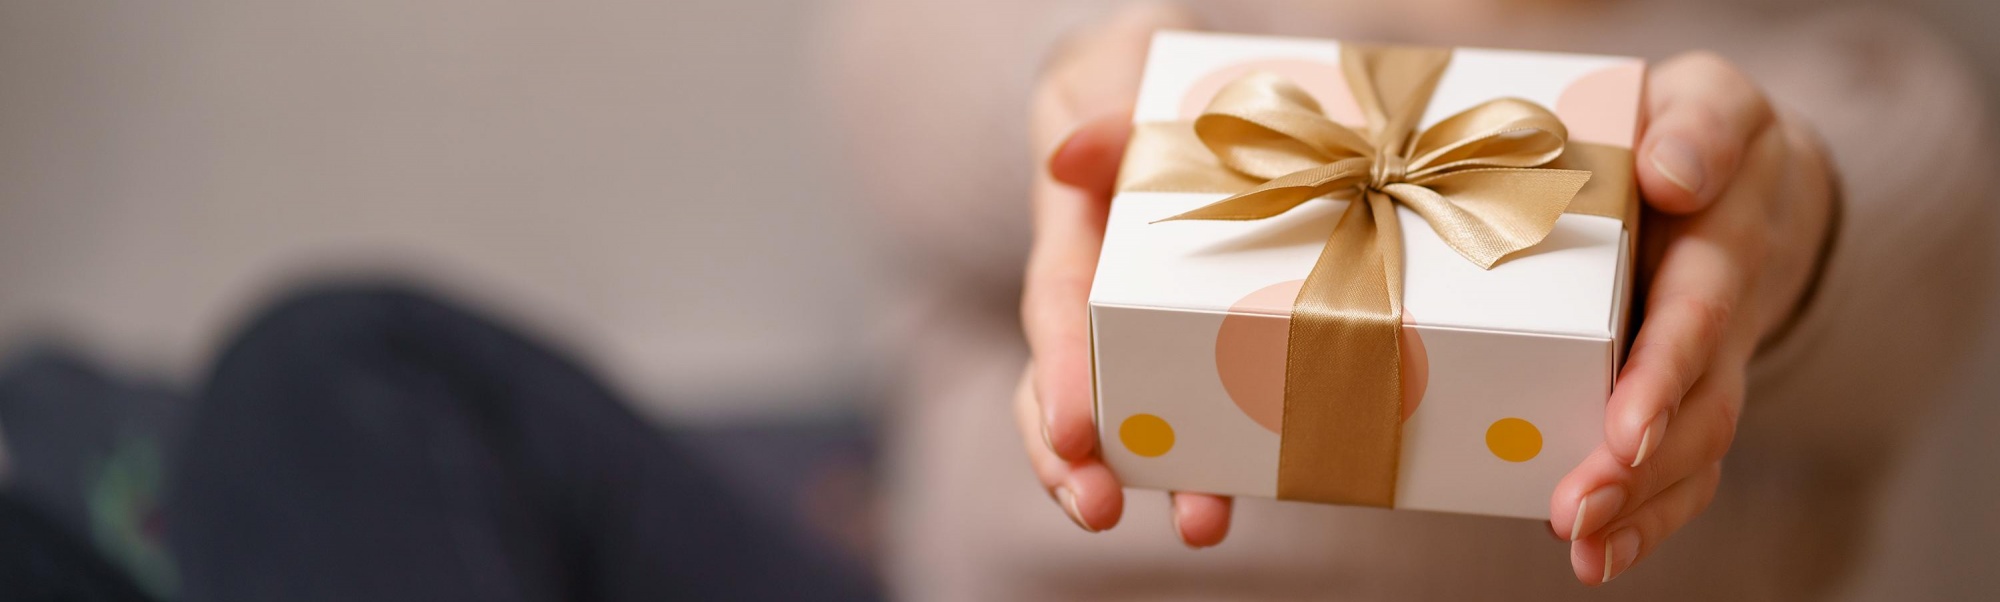 Подарки на скорую руку: 8 идей для тех, кто откладывал все до последнего момента